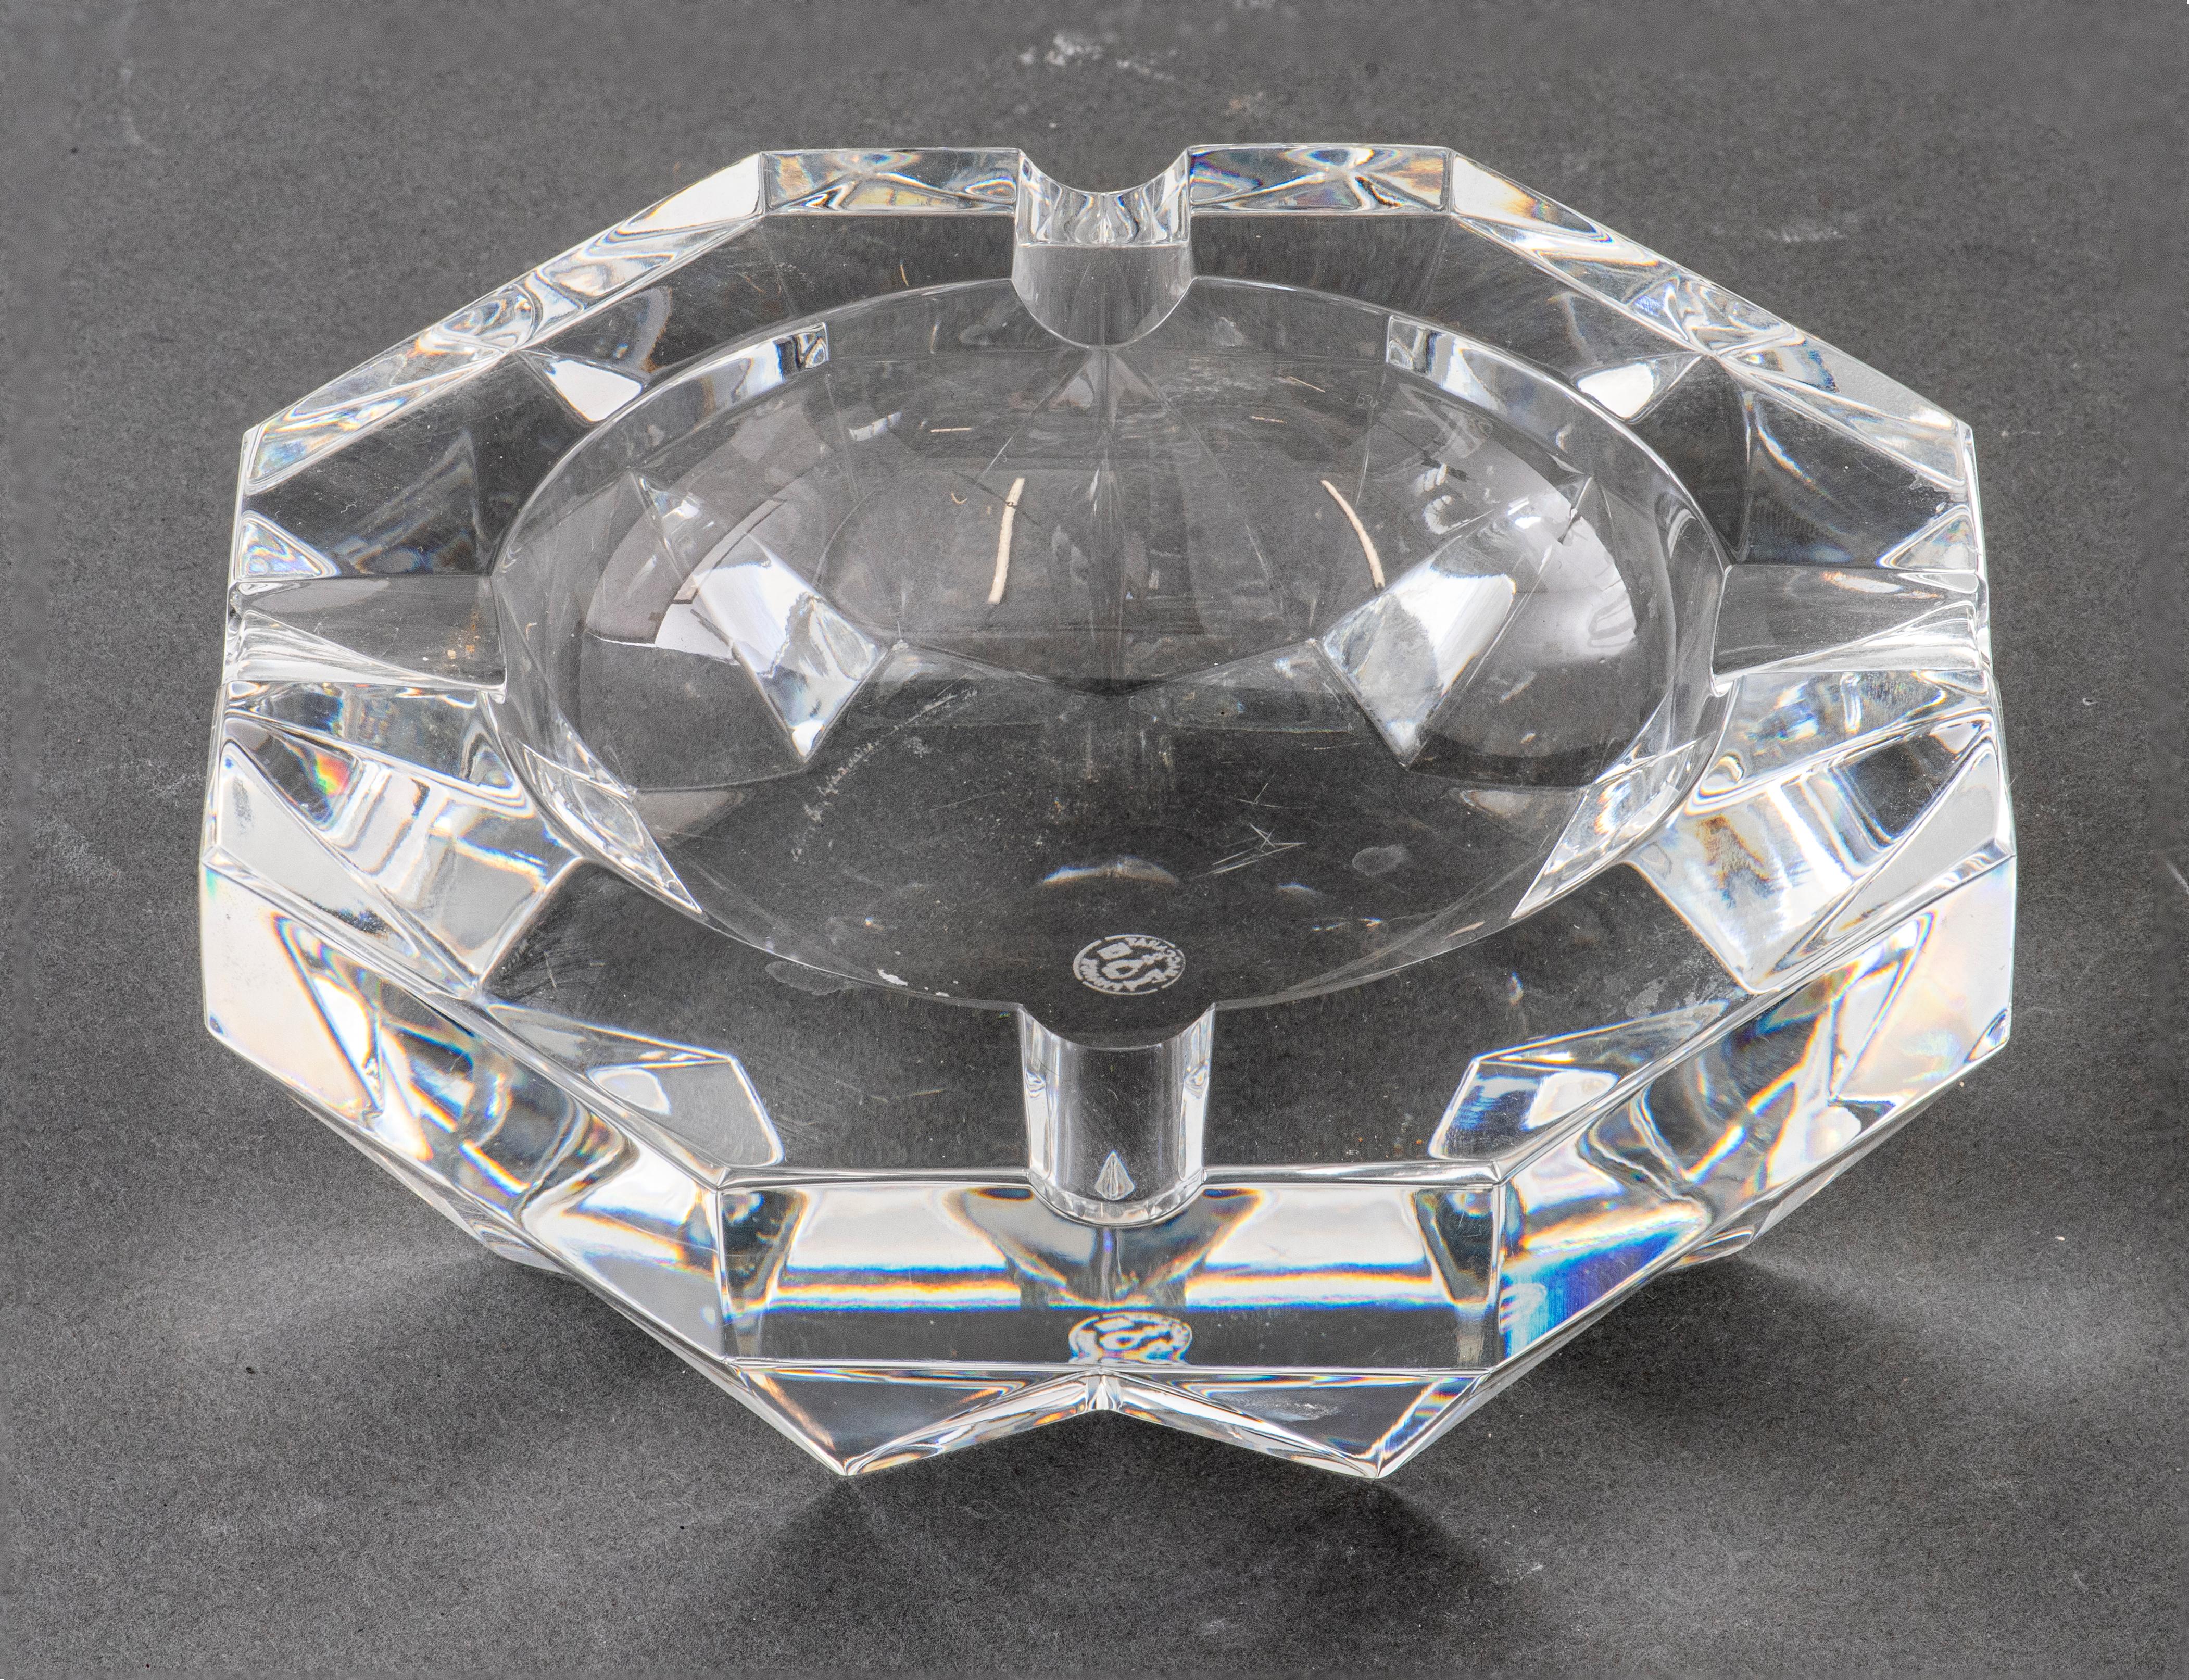 Baccarat Kristallglas vide poche, hergestellt in Frankreich, markiert 